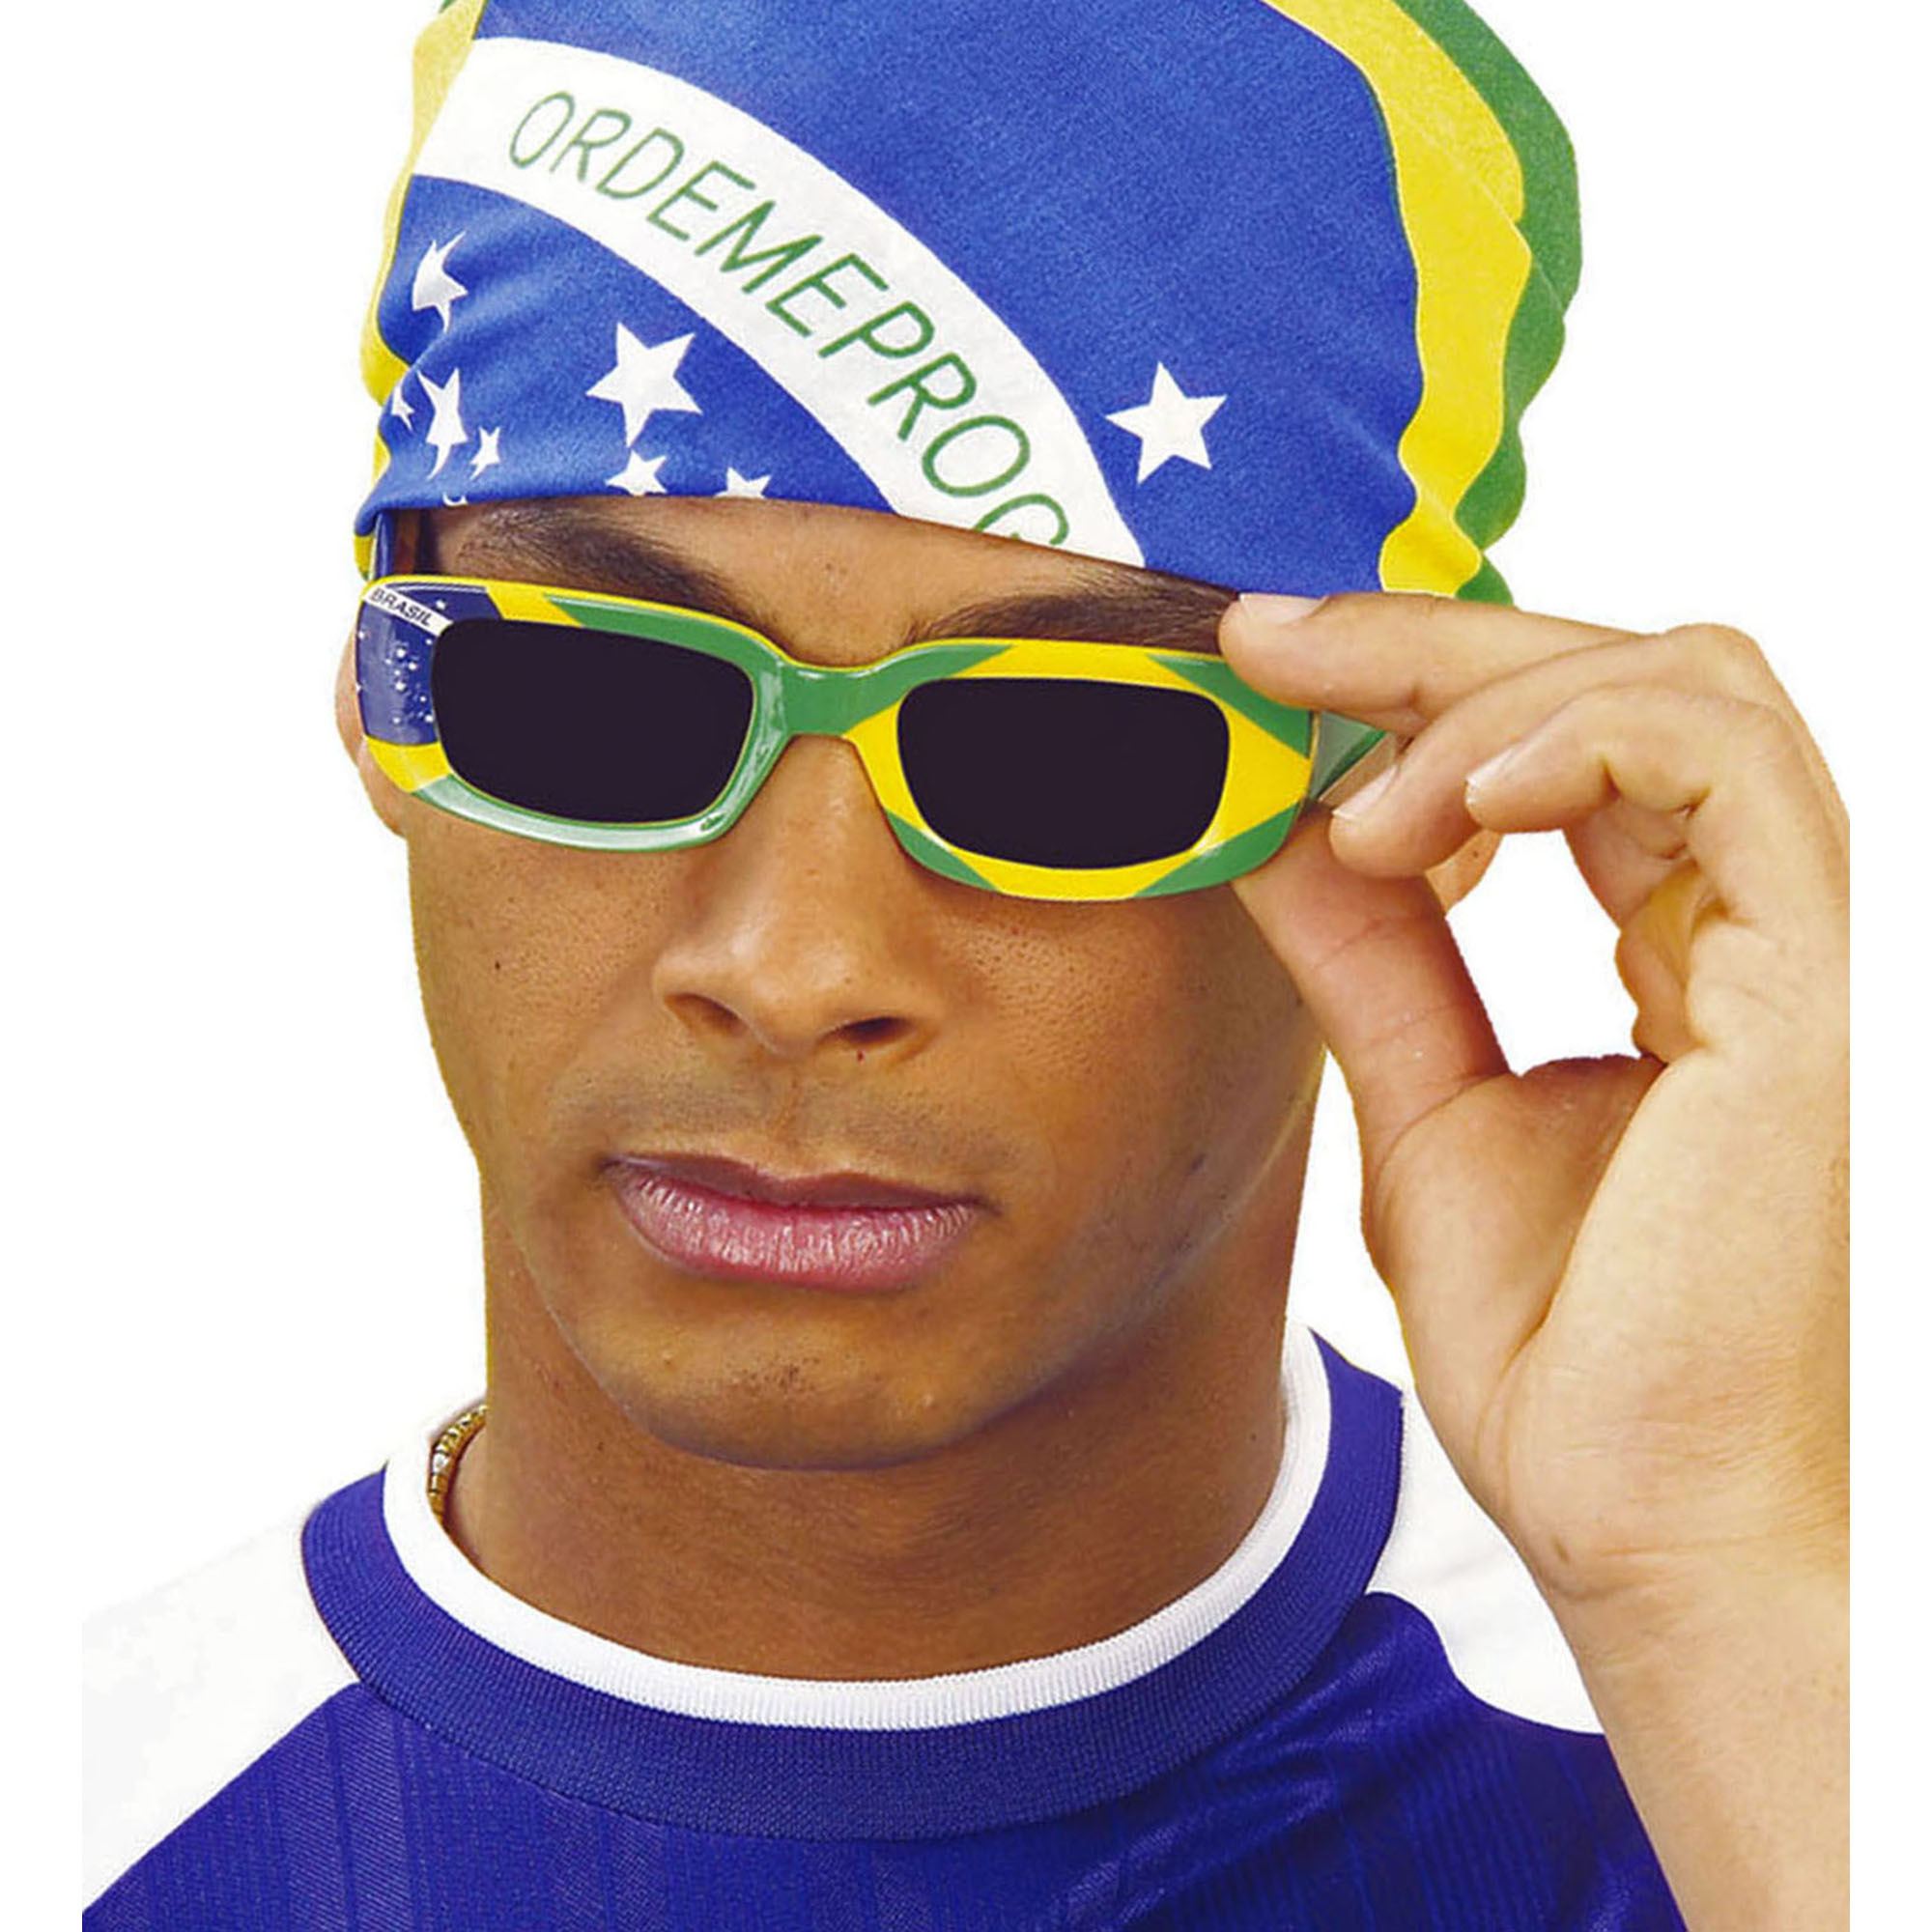 Bril in de kleuren van de vlag van brazilie